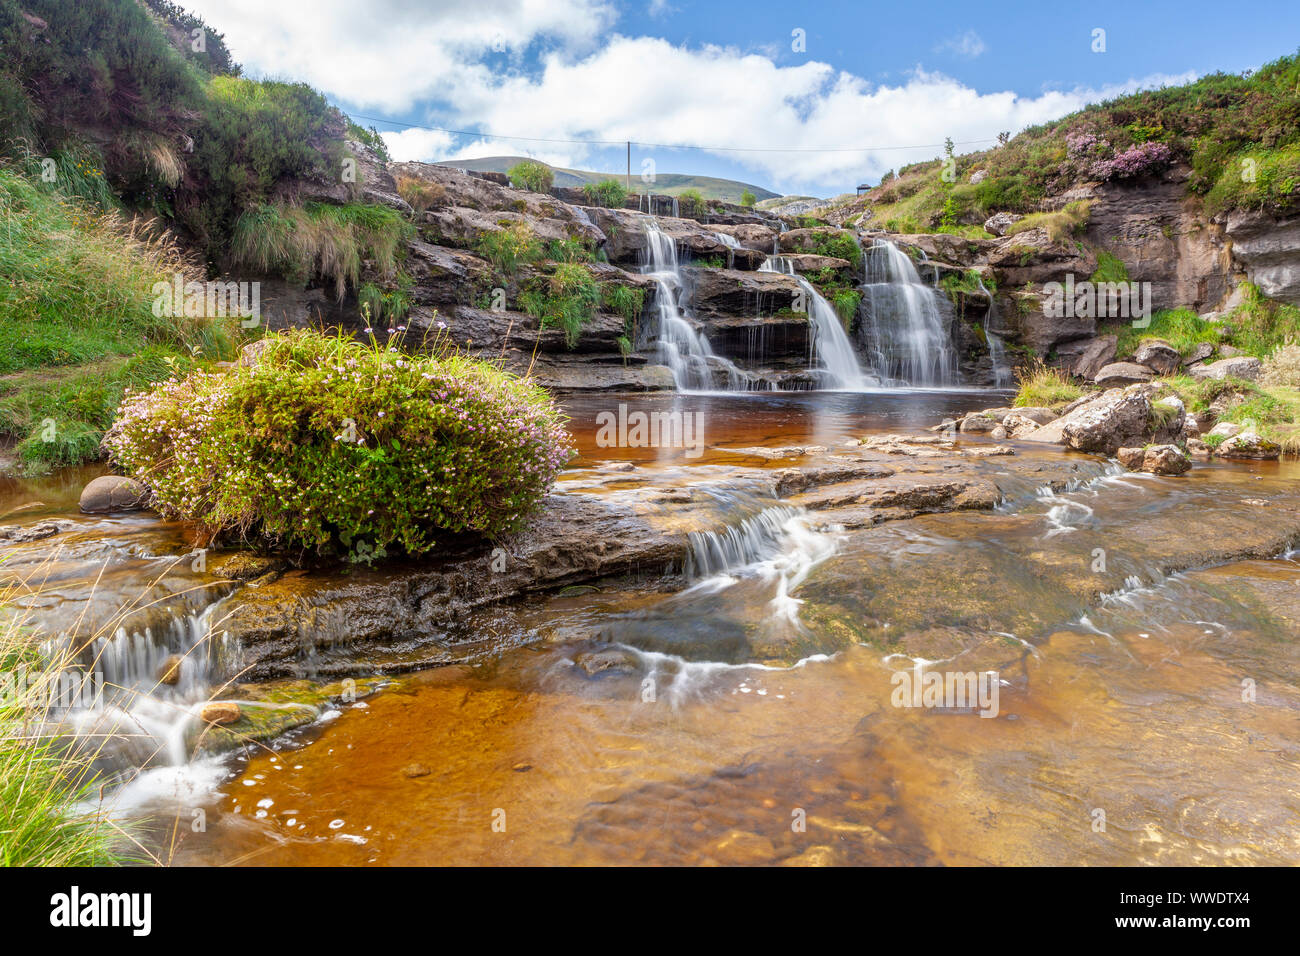 Guarguero waterfalls, Valles Pasiegos, Cantabria, Spain Stock Photo